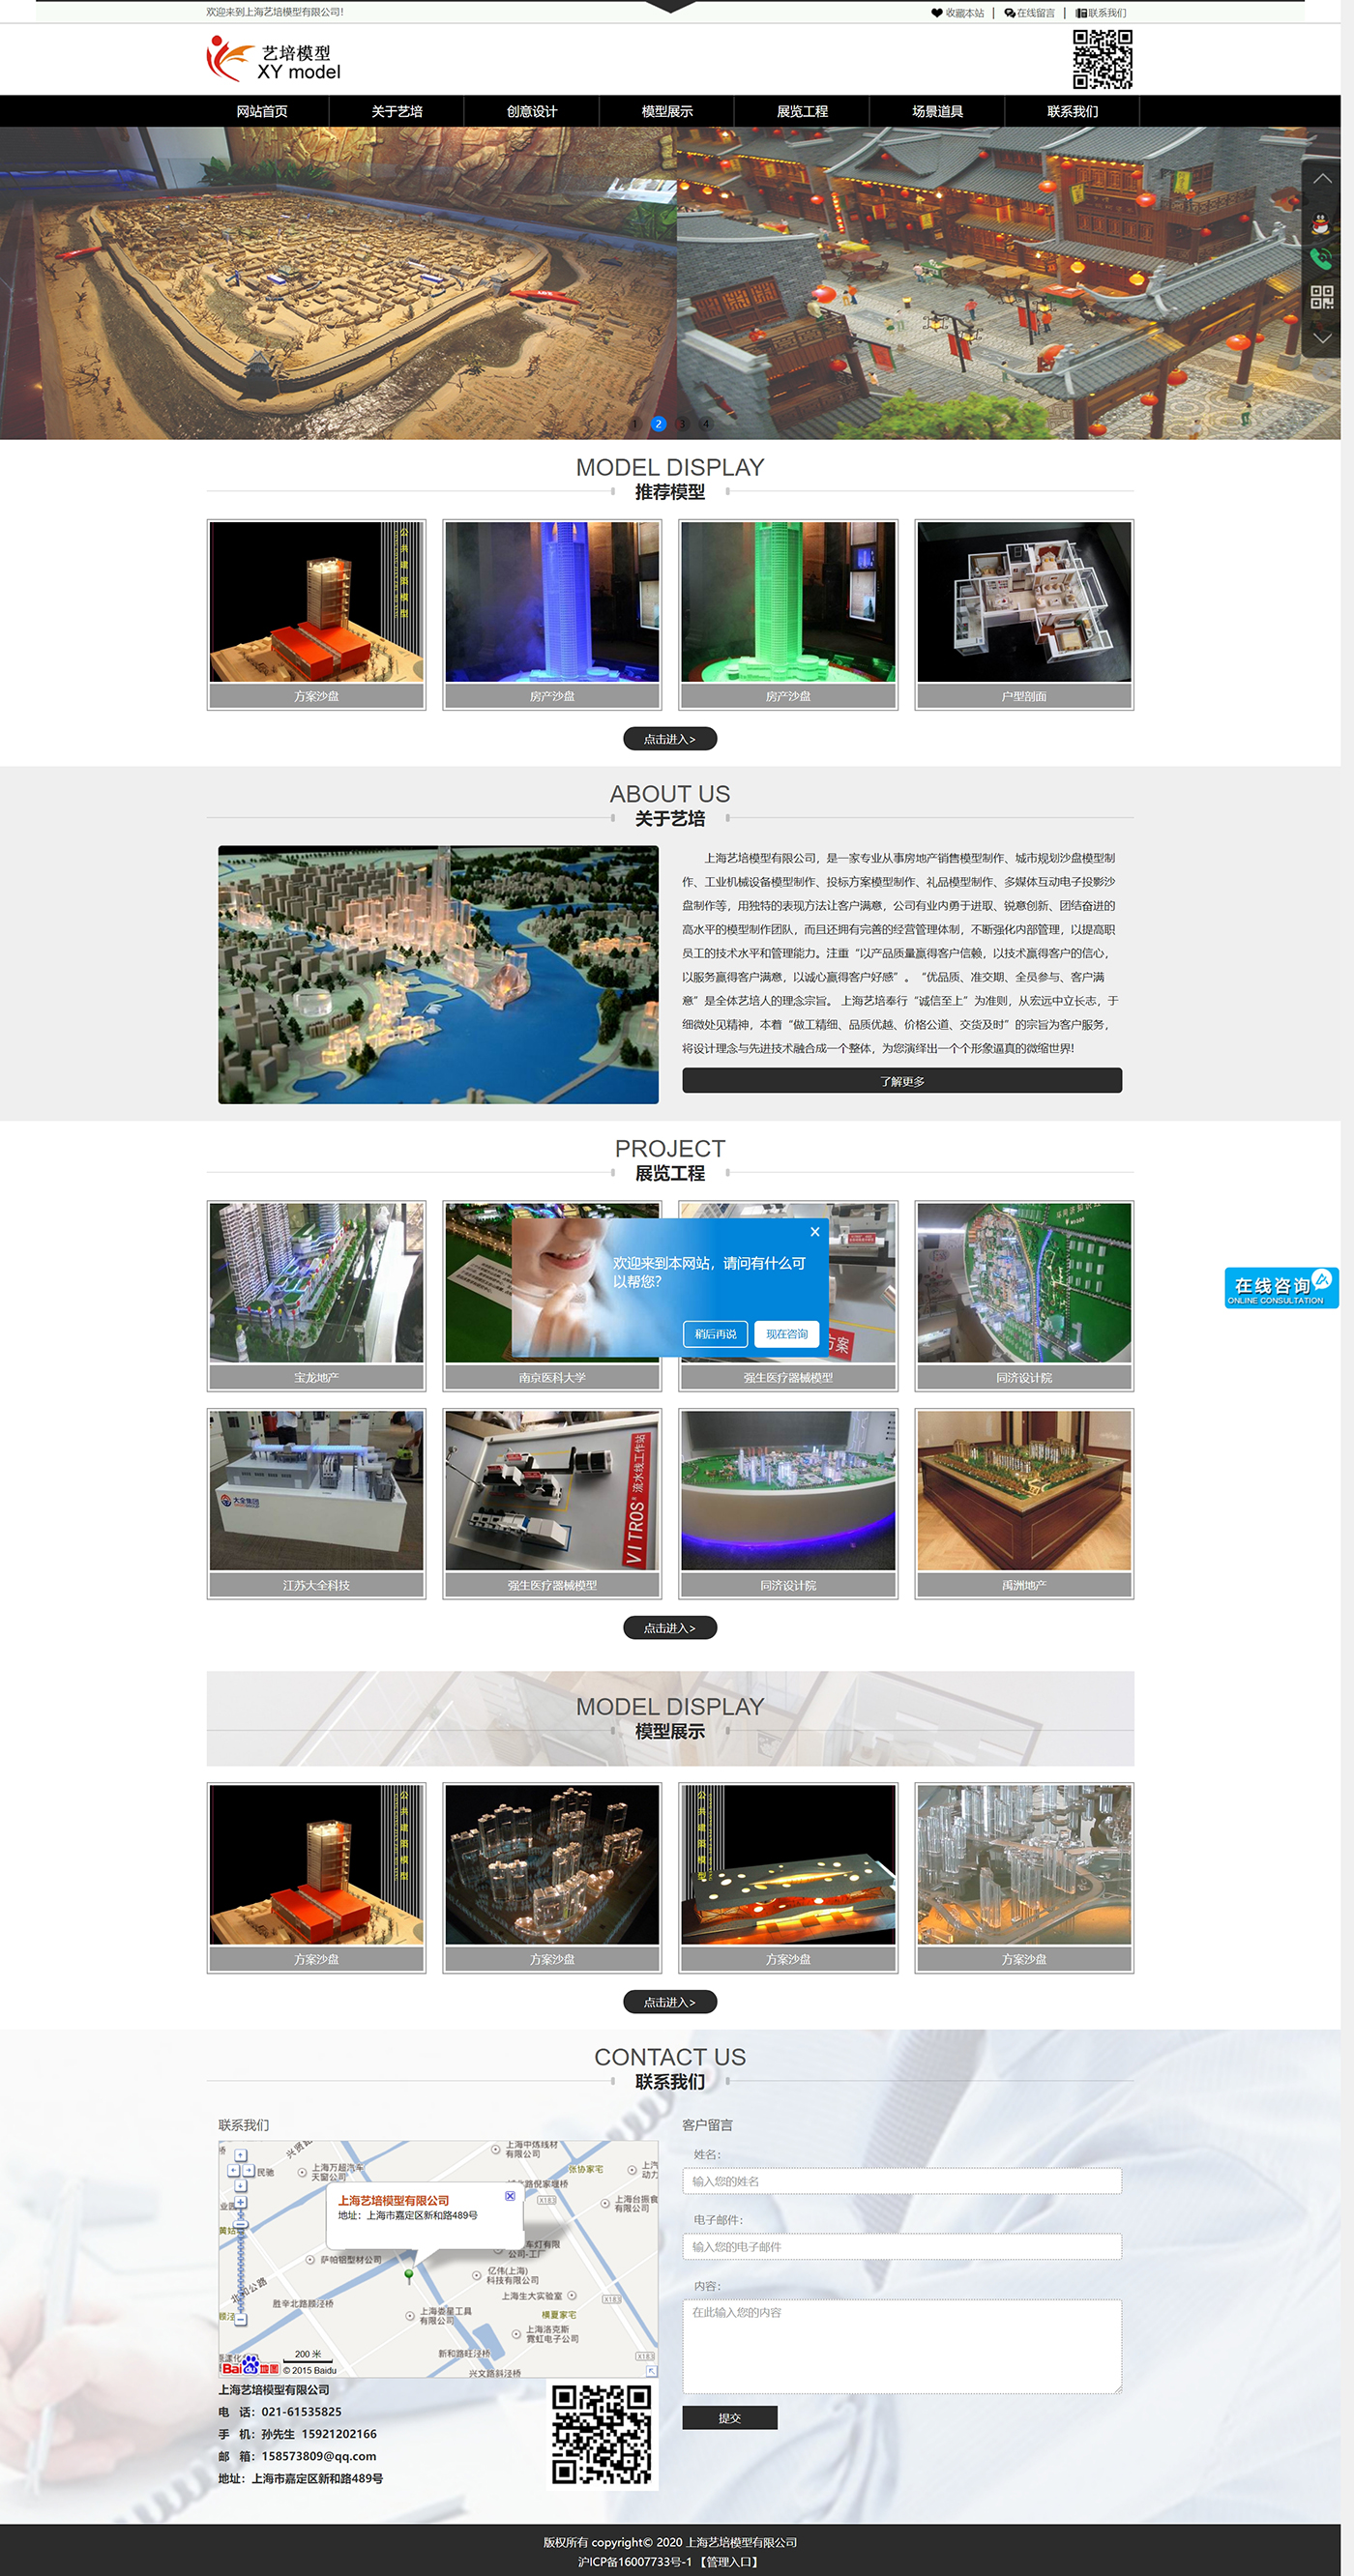 上海沙盘公司-机械沙盘制作-实训教学-沙盘制作厂家-上海艺培模型.jpg